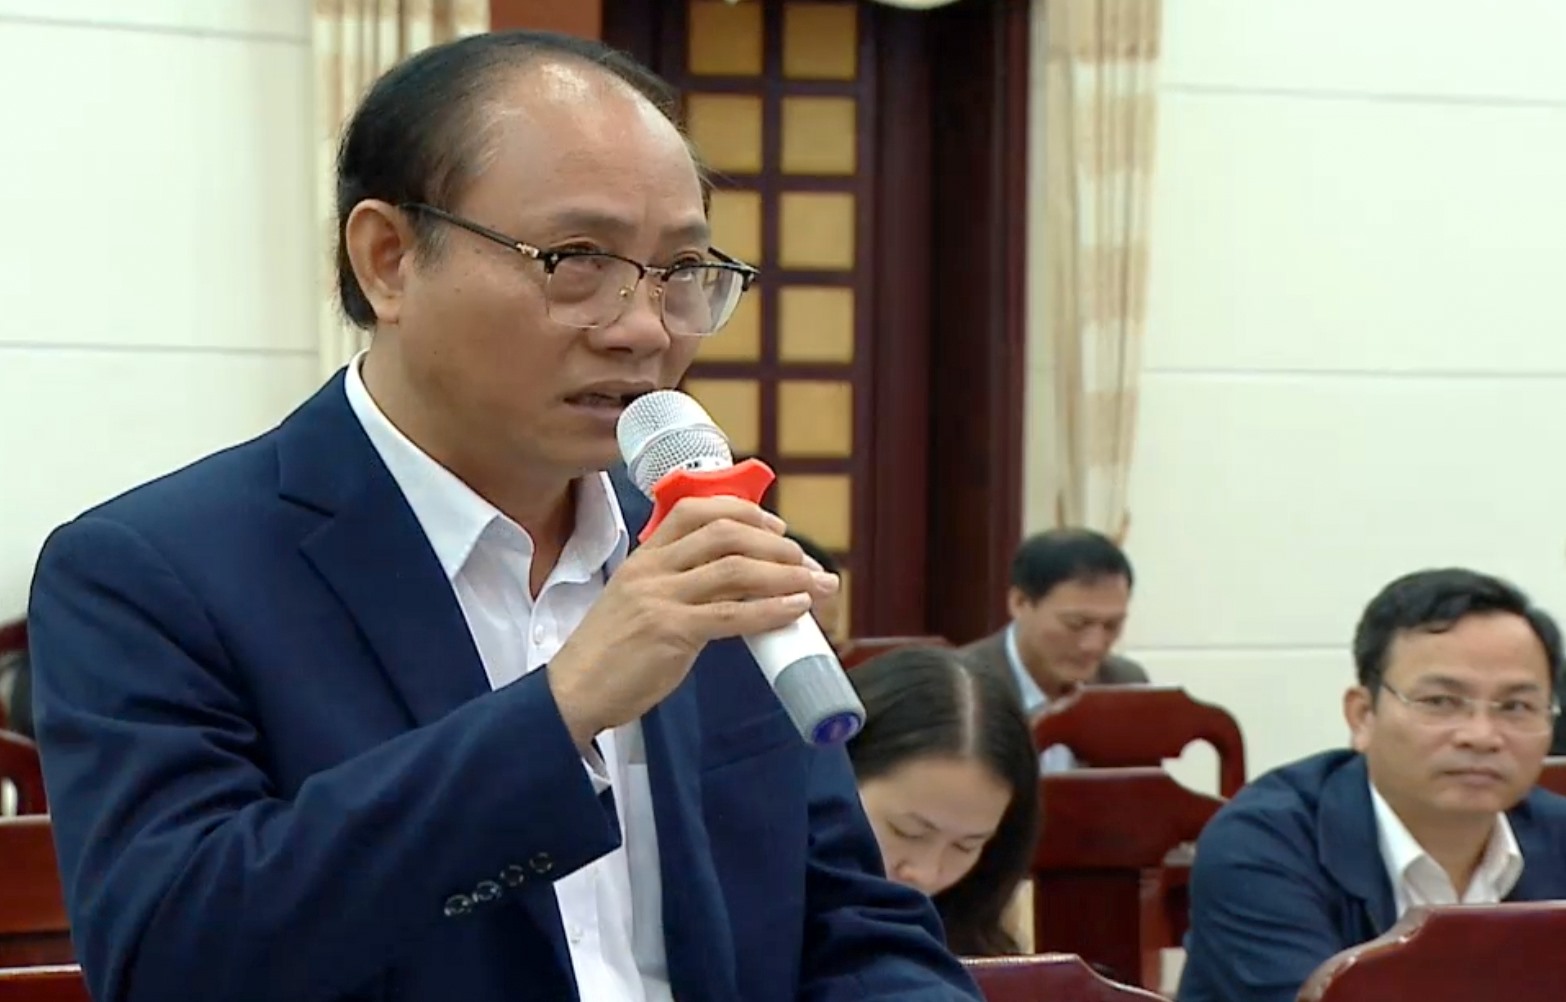 Đại biểu Trần Việt Dũng nêu ý kiến chất vấn tại kỳ họp HĐND tỉnh Quảng Trị. Ảnh: Hưng Thơ.